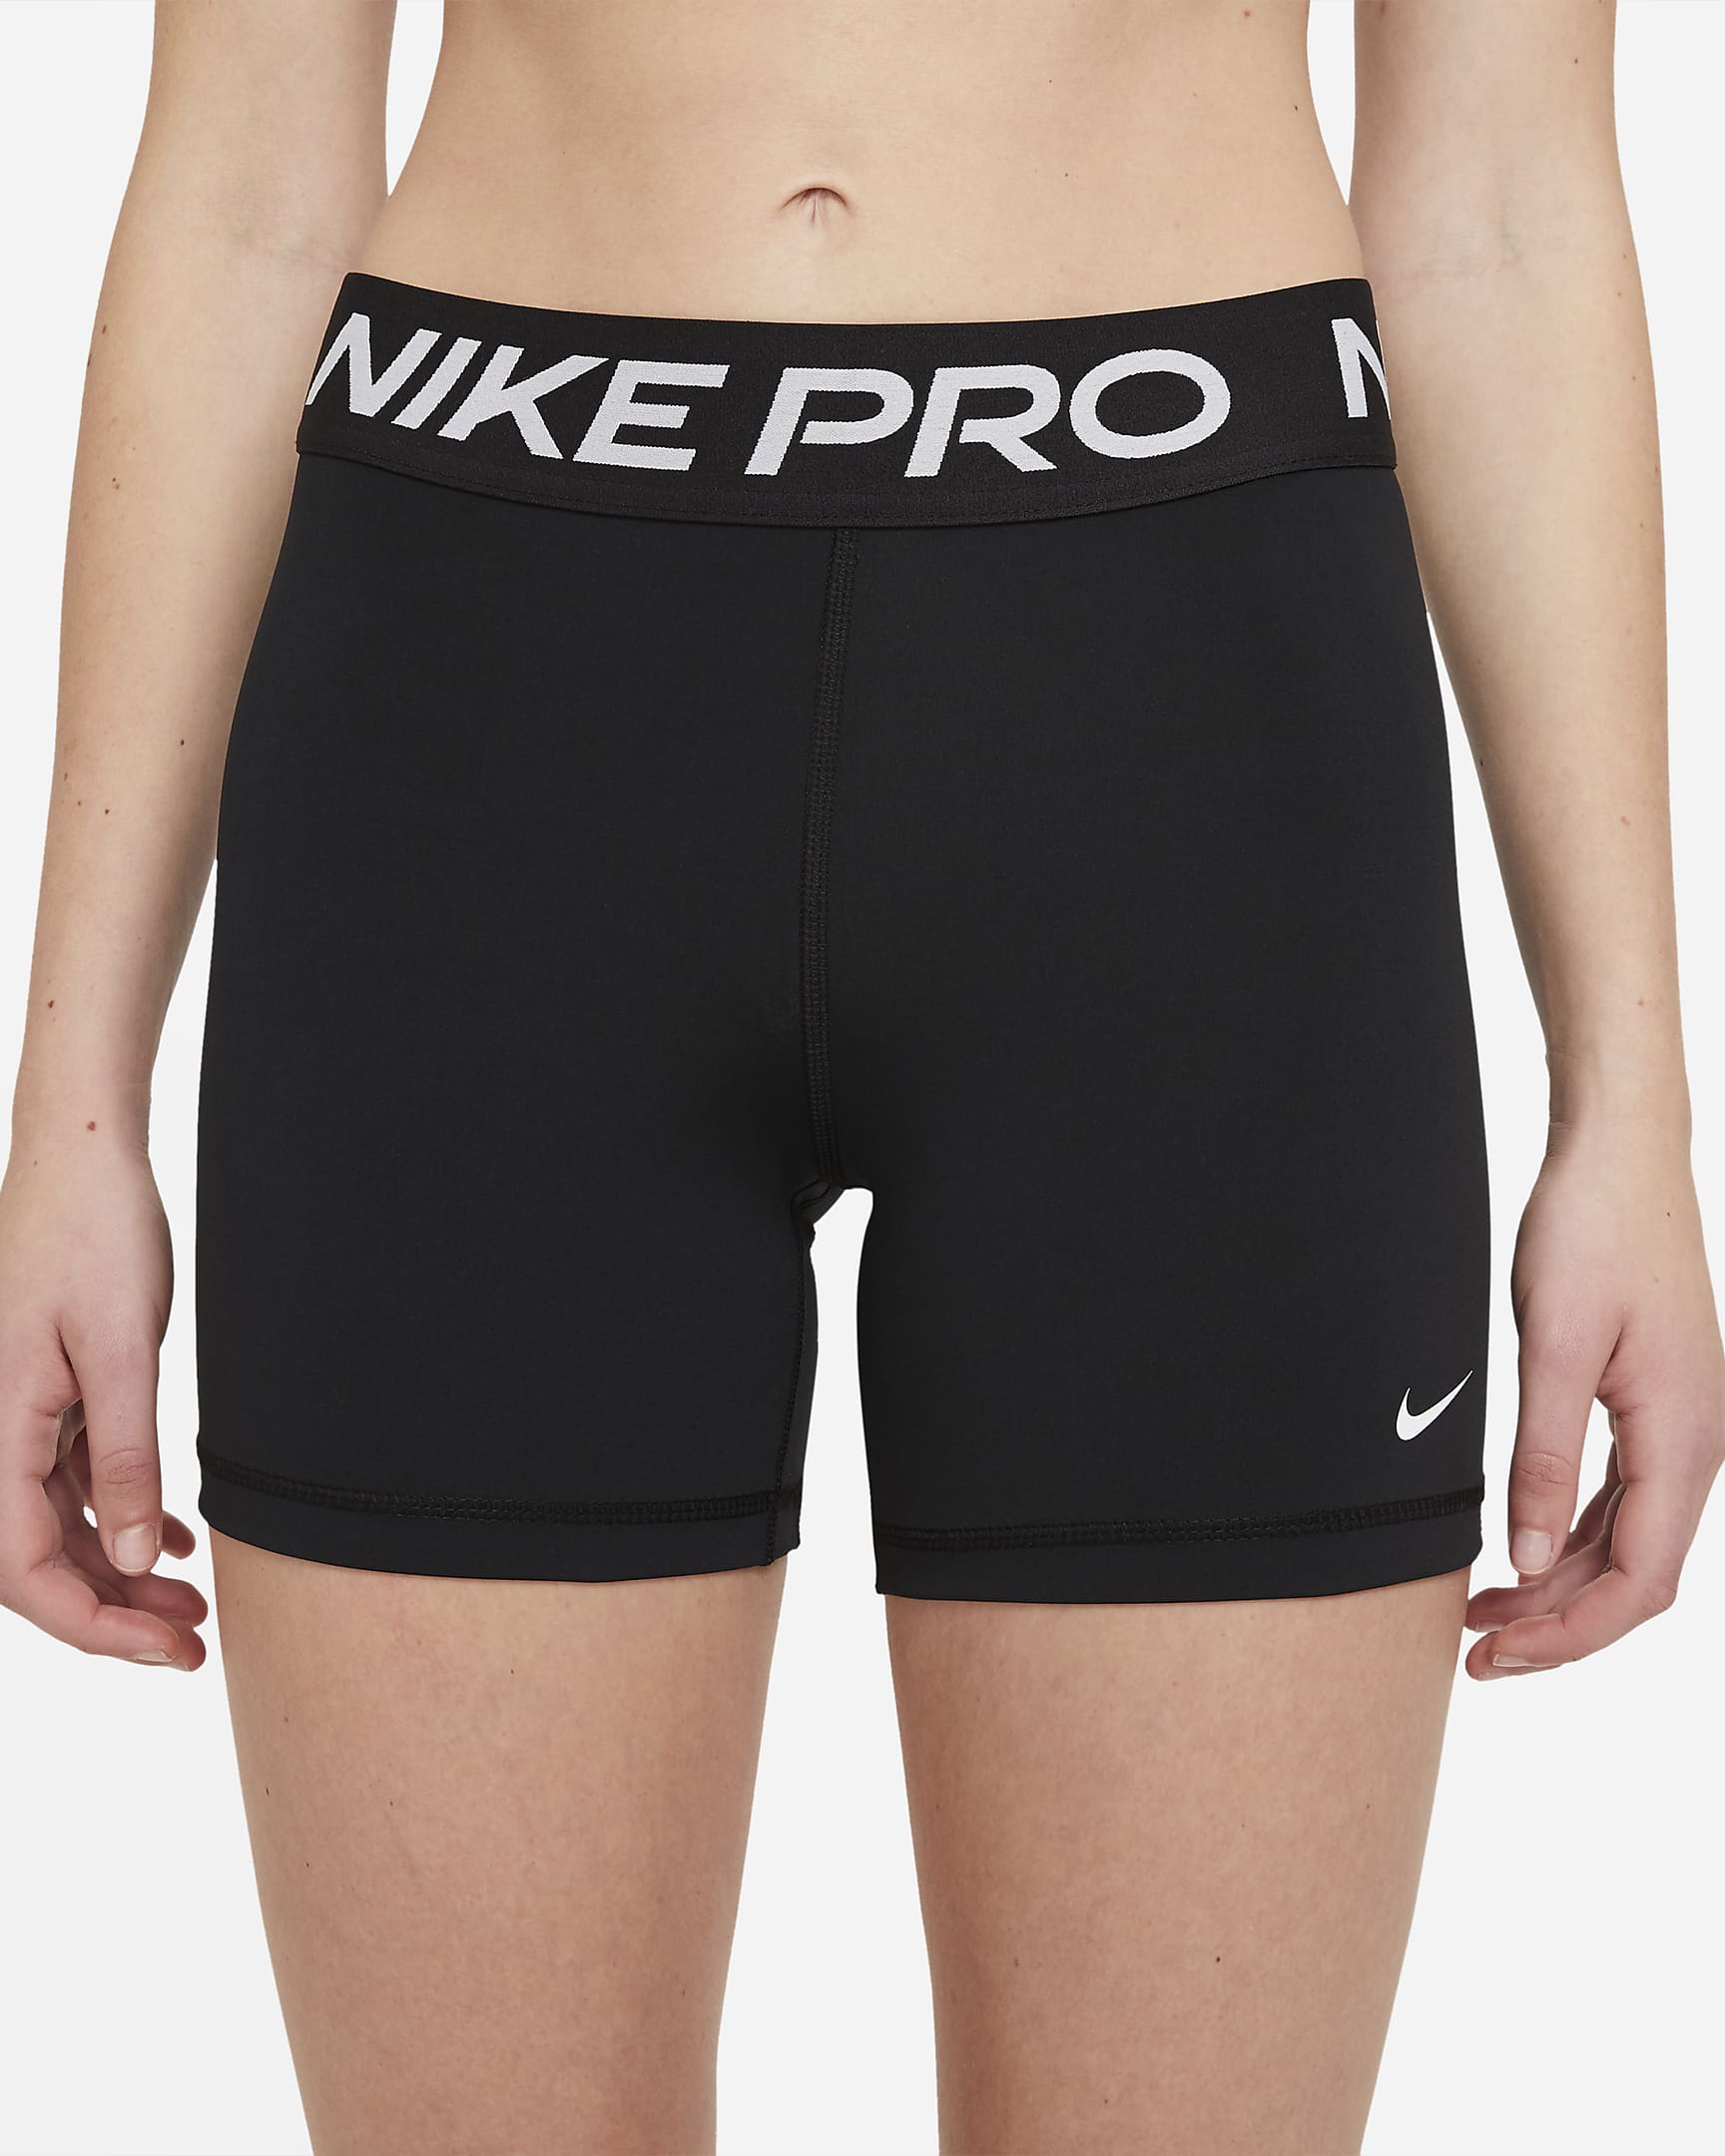 Nike Pro 365 Women's 13cm (approx.) Shorts - Black/White